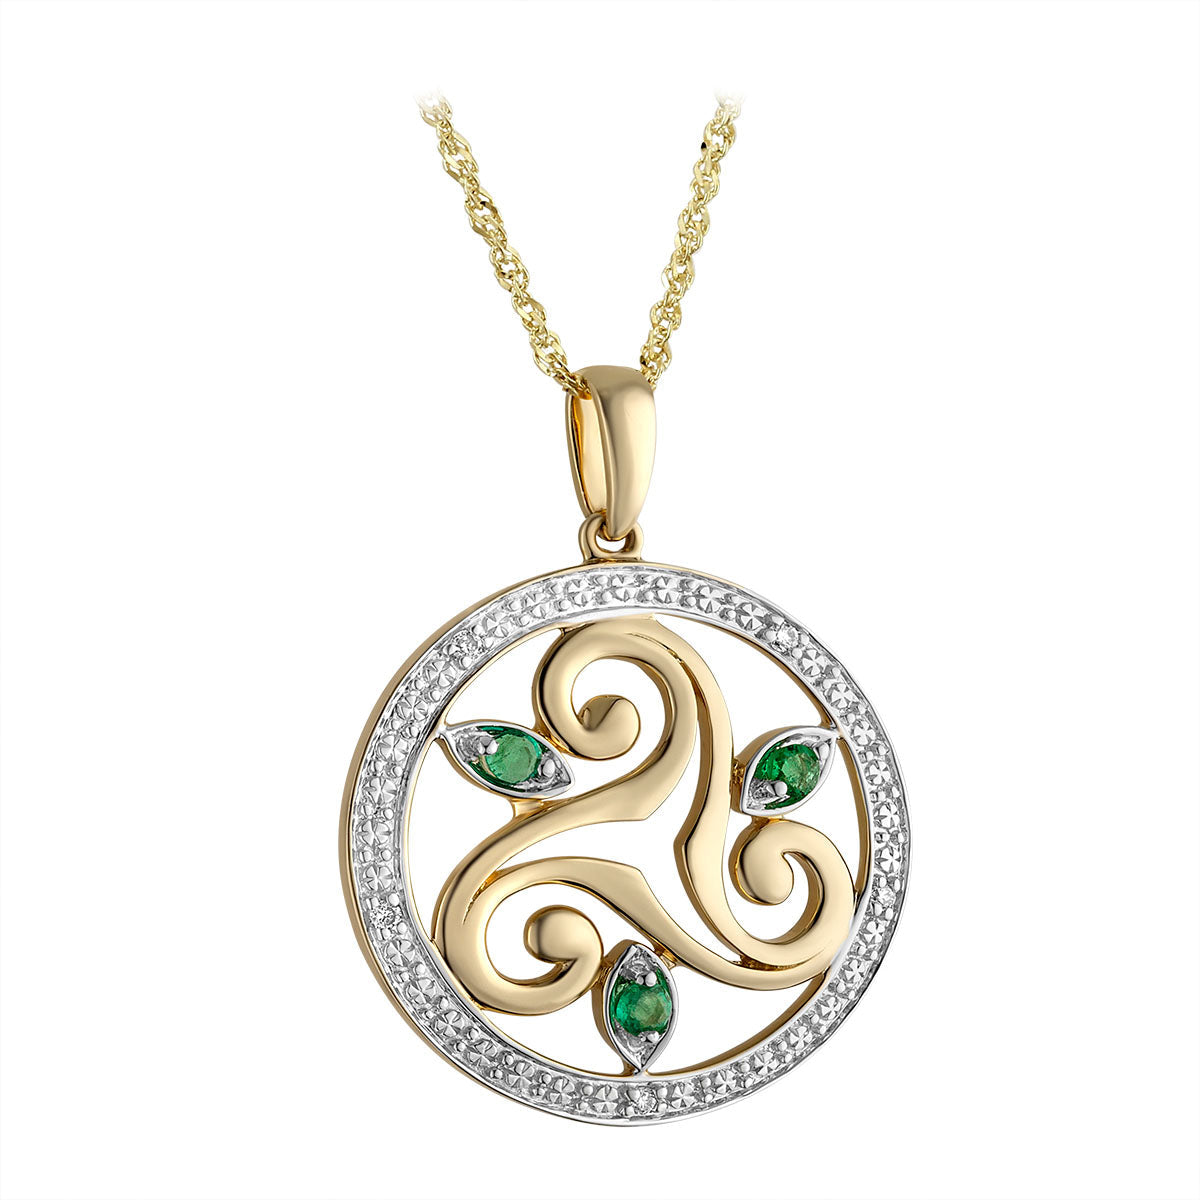 14 karat White & Yellow Gold Diamond & Emerald Round Spiral Necklace S46787 on 18 inch 14 karat gold Sing chain from Solvar